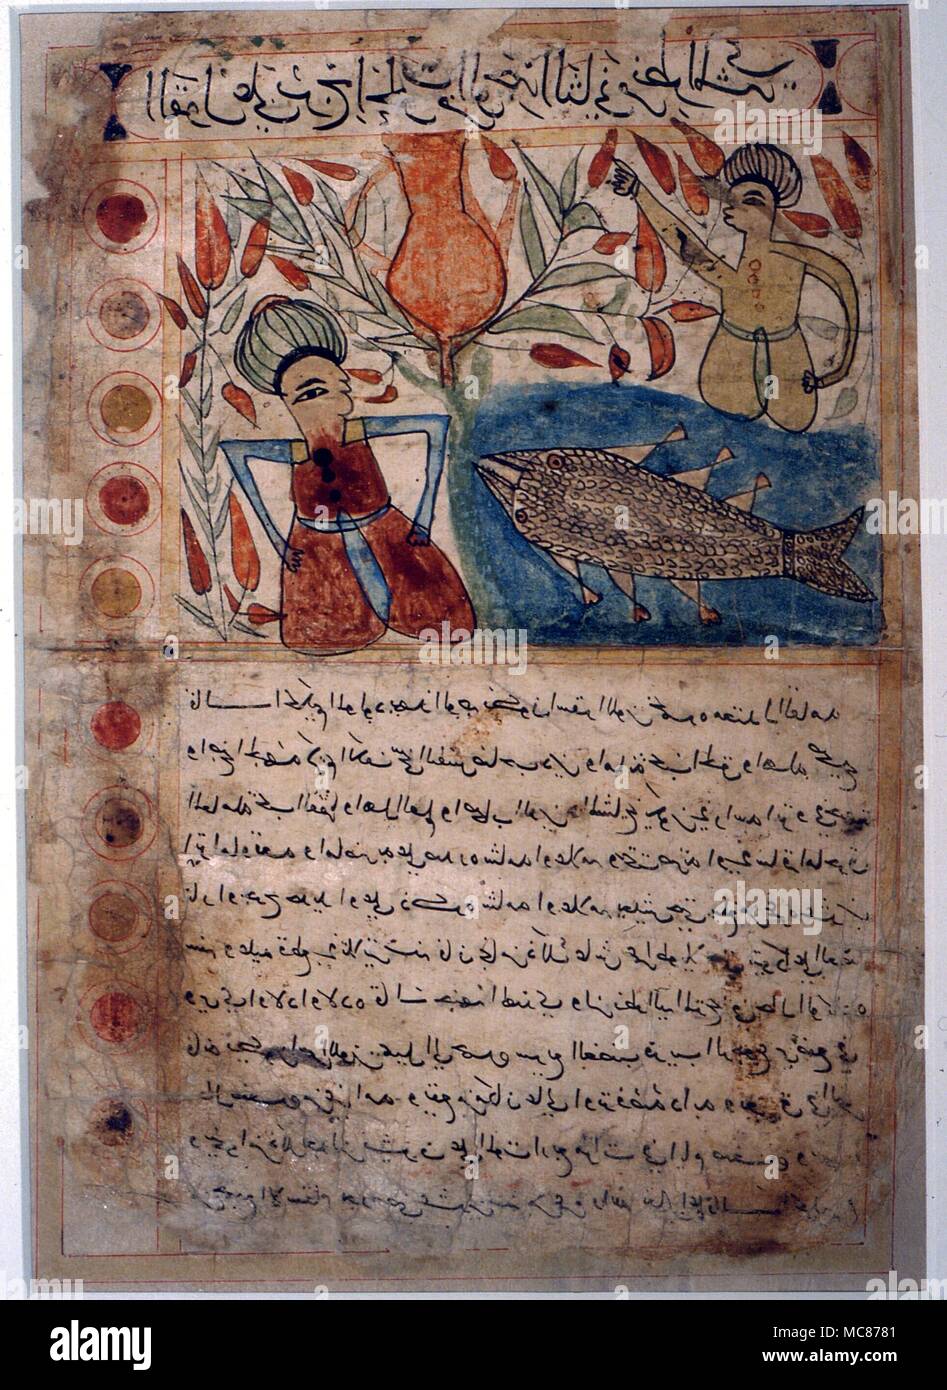 Astrologia - arabo immagine del segno zodiacale pesci (un singolo pesce) dal XVII secolo testo persiano di astrologia. Dar al Athar al Islammiyah, Kuwait Foto Stock